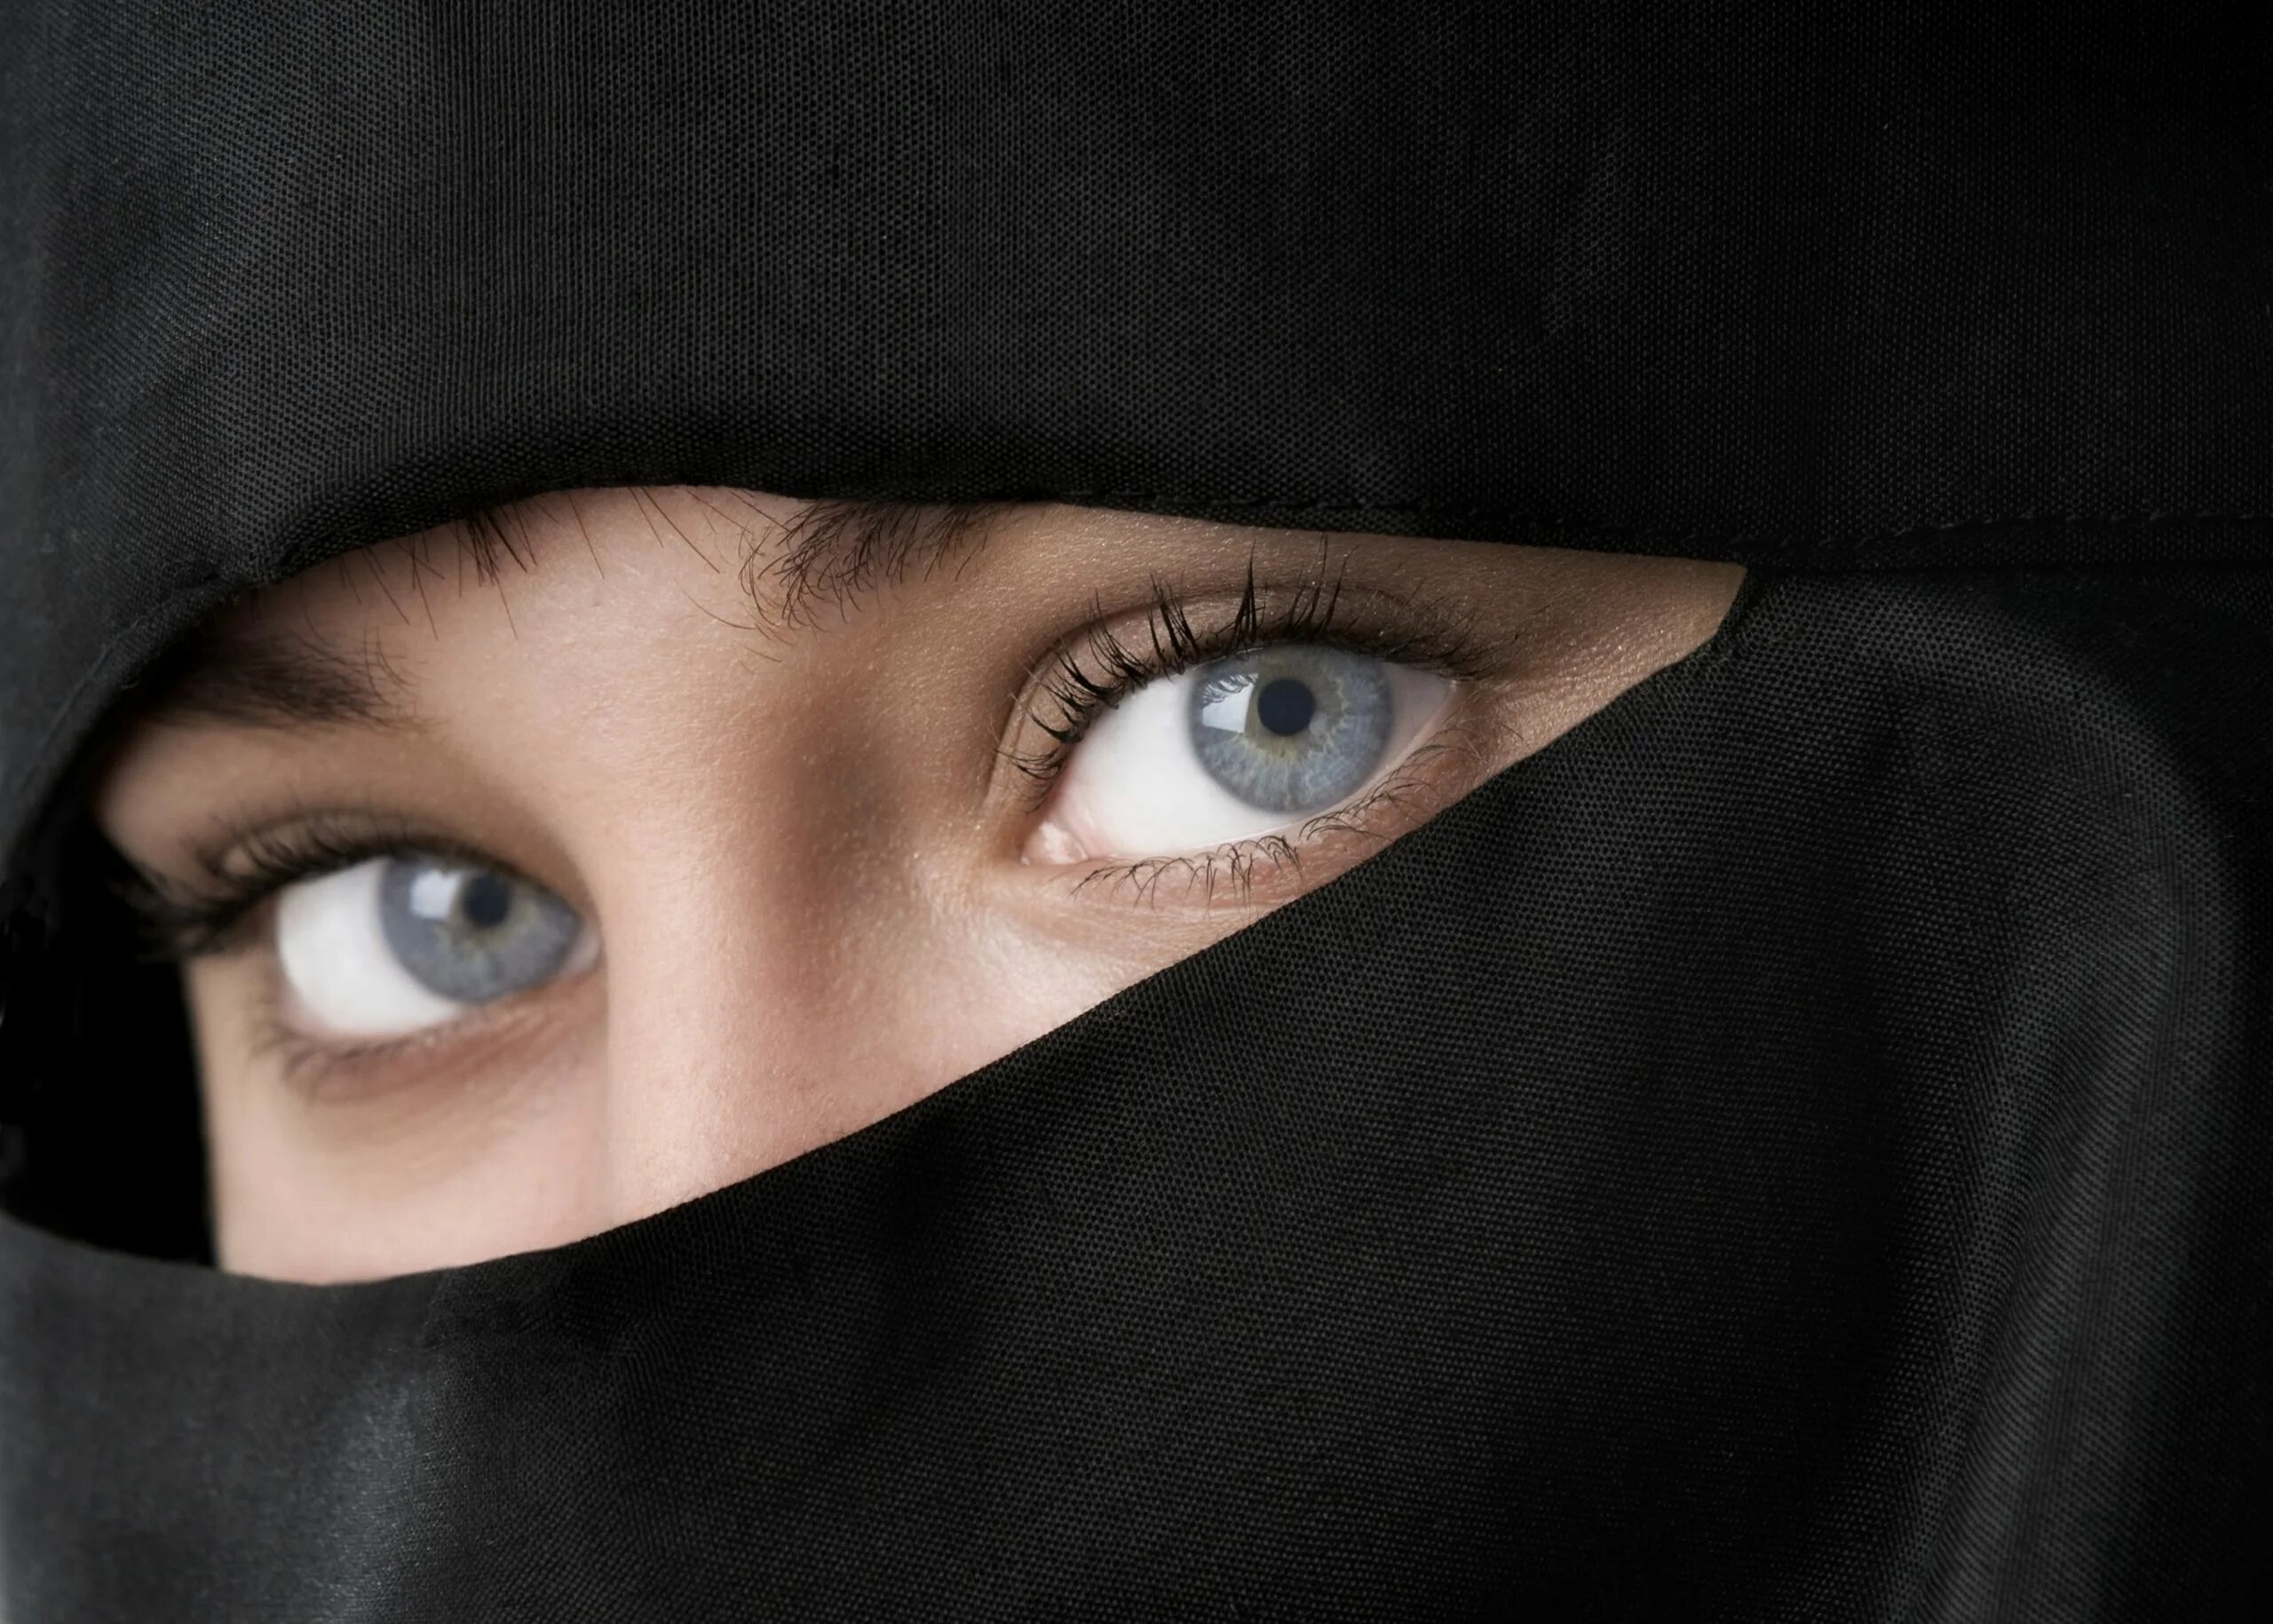 Арабская паранджа. Чадра паранджа хиджаб. Арабский никаб. Глаза девушки в парандже. Мусульманка с голубыми глазами.